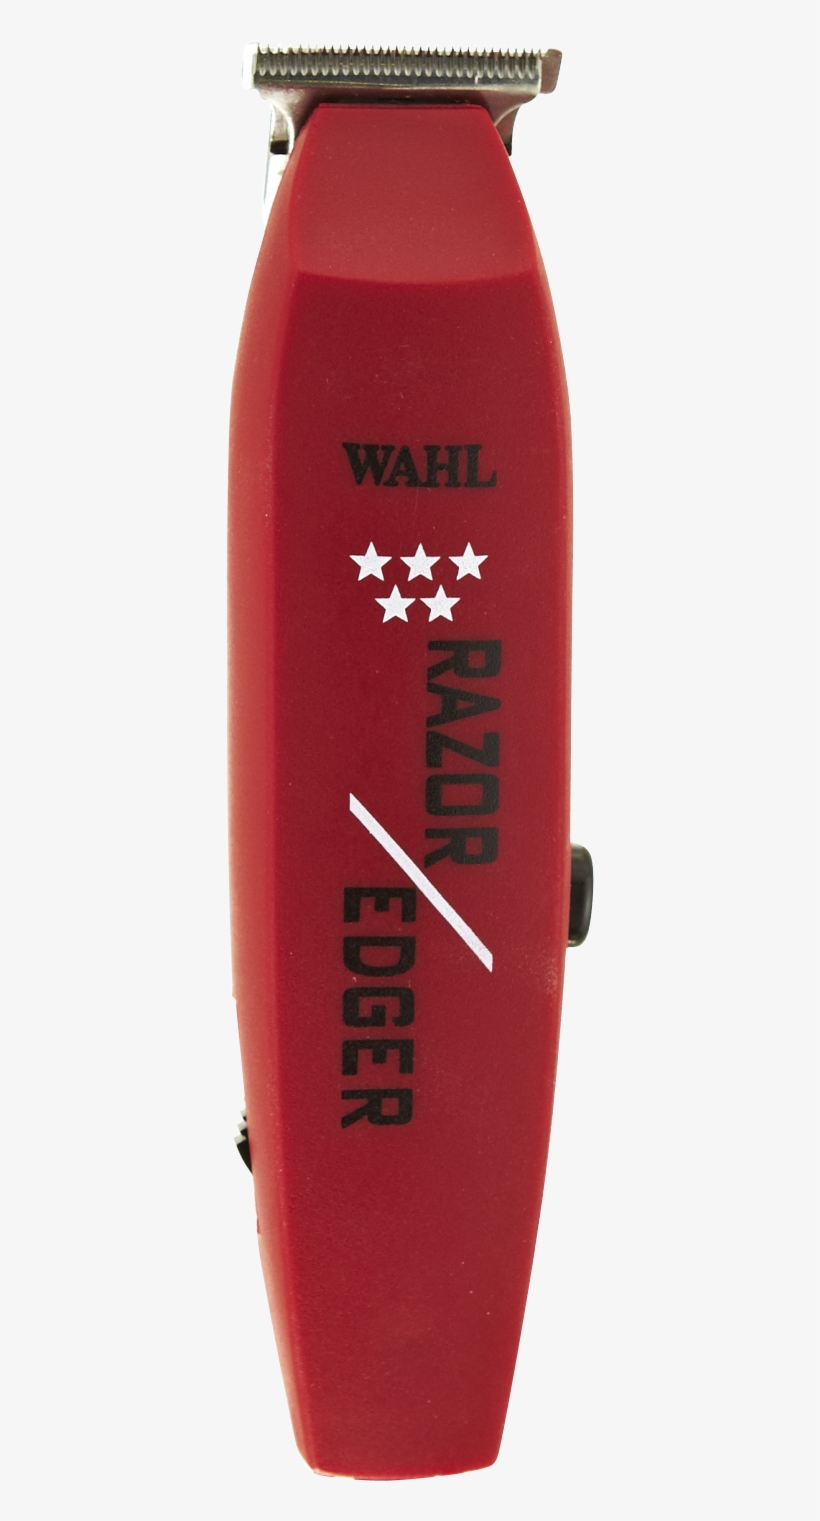 razor edger trimmer